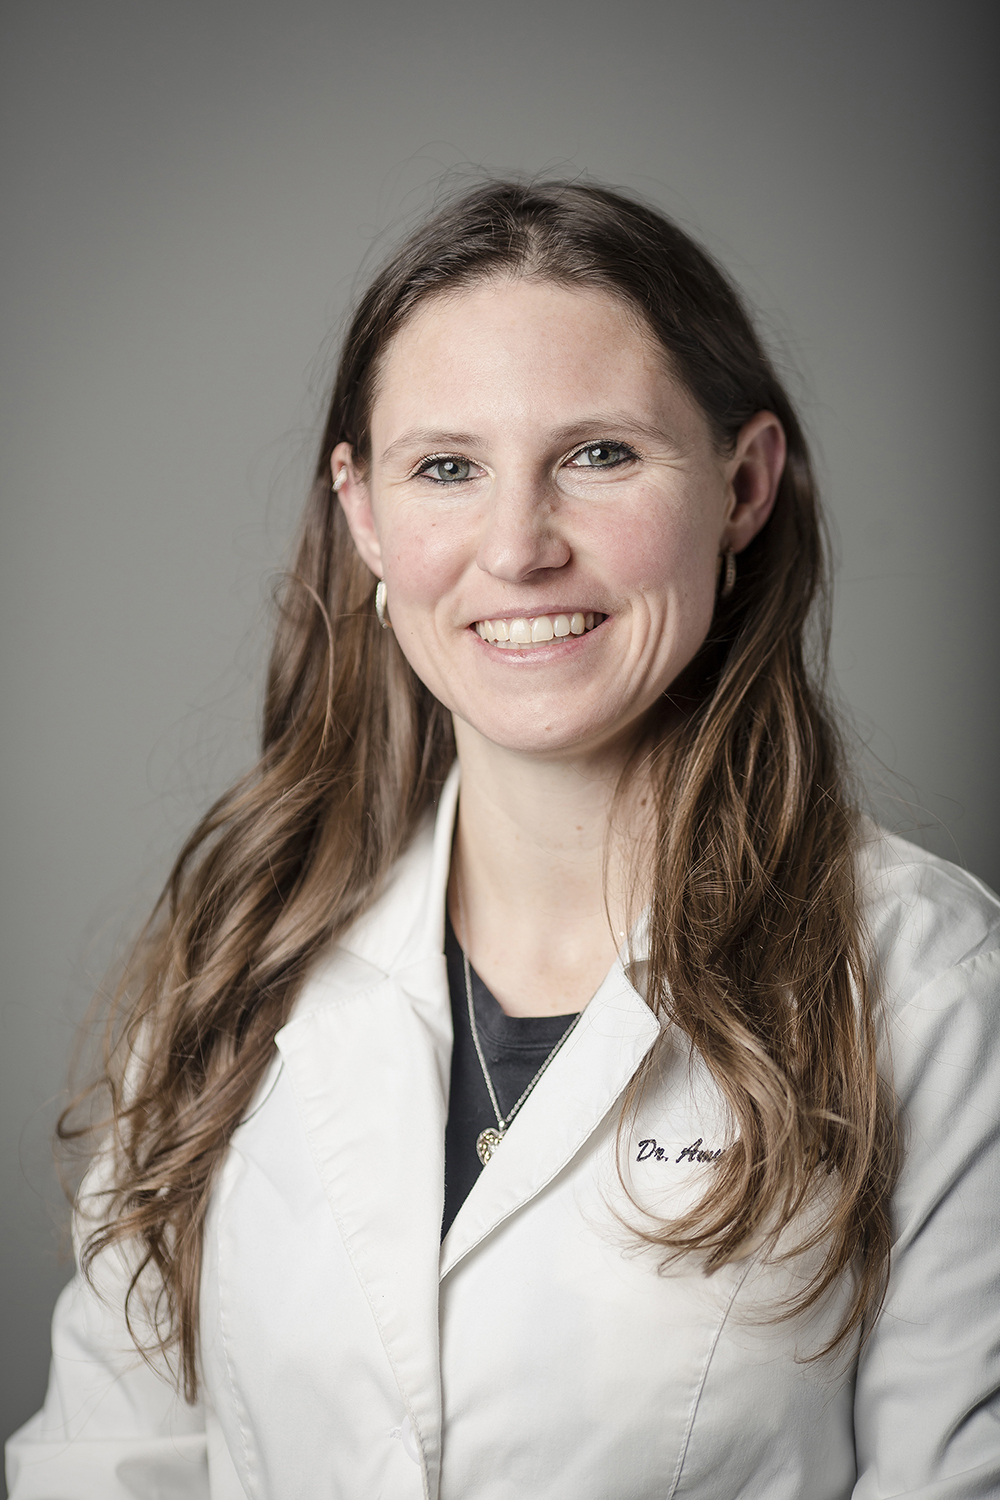 Meet Dr. Amy Waltz